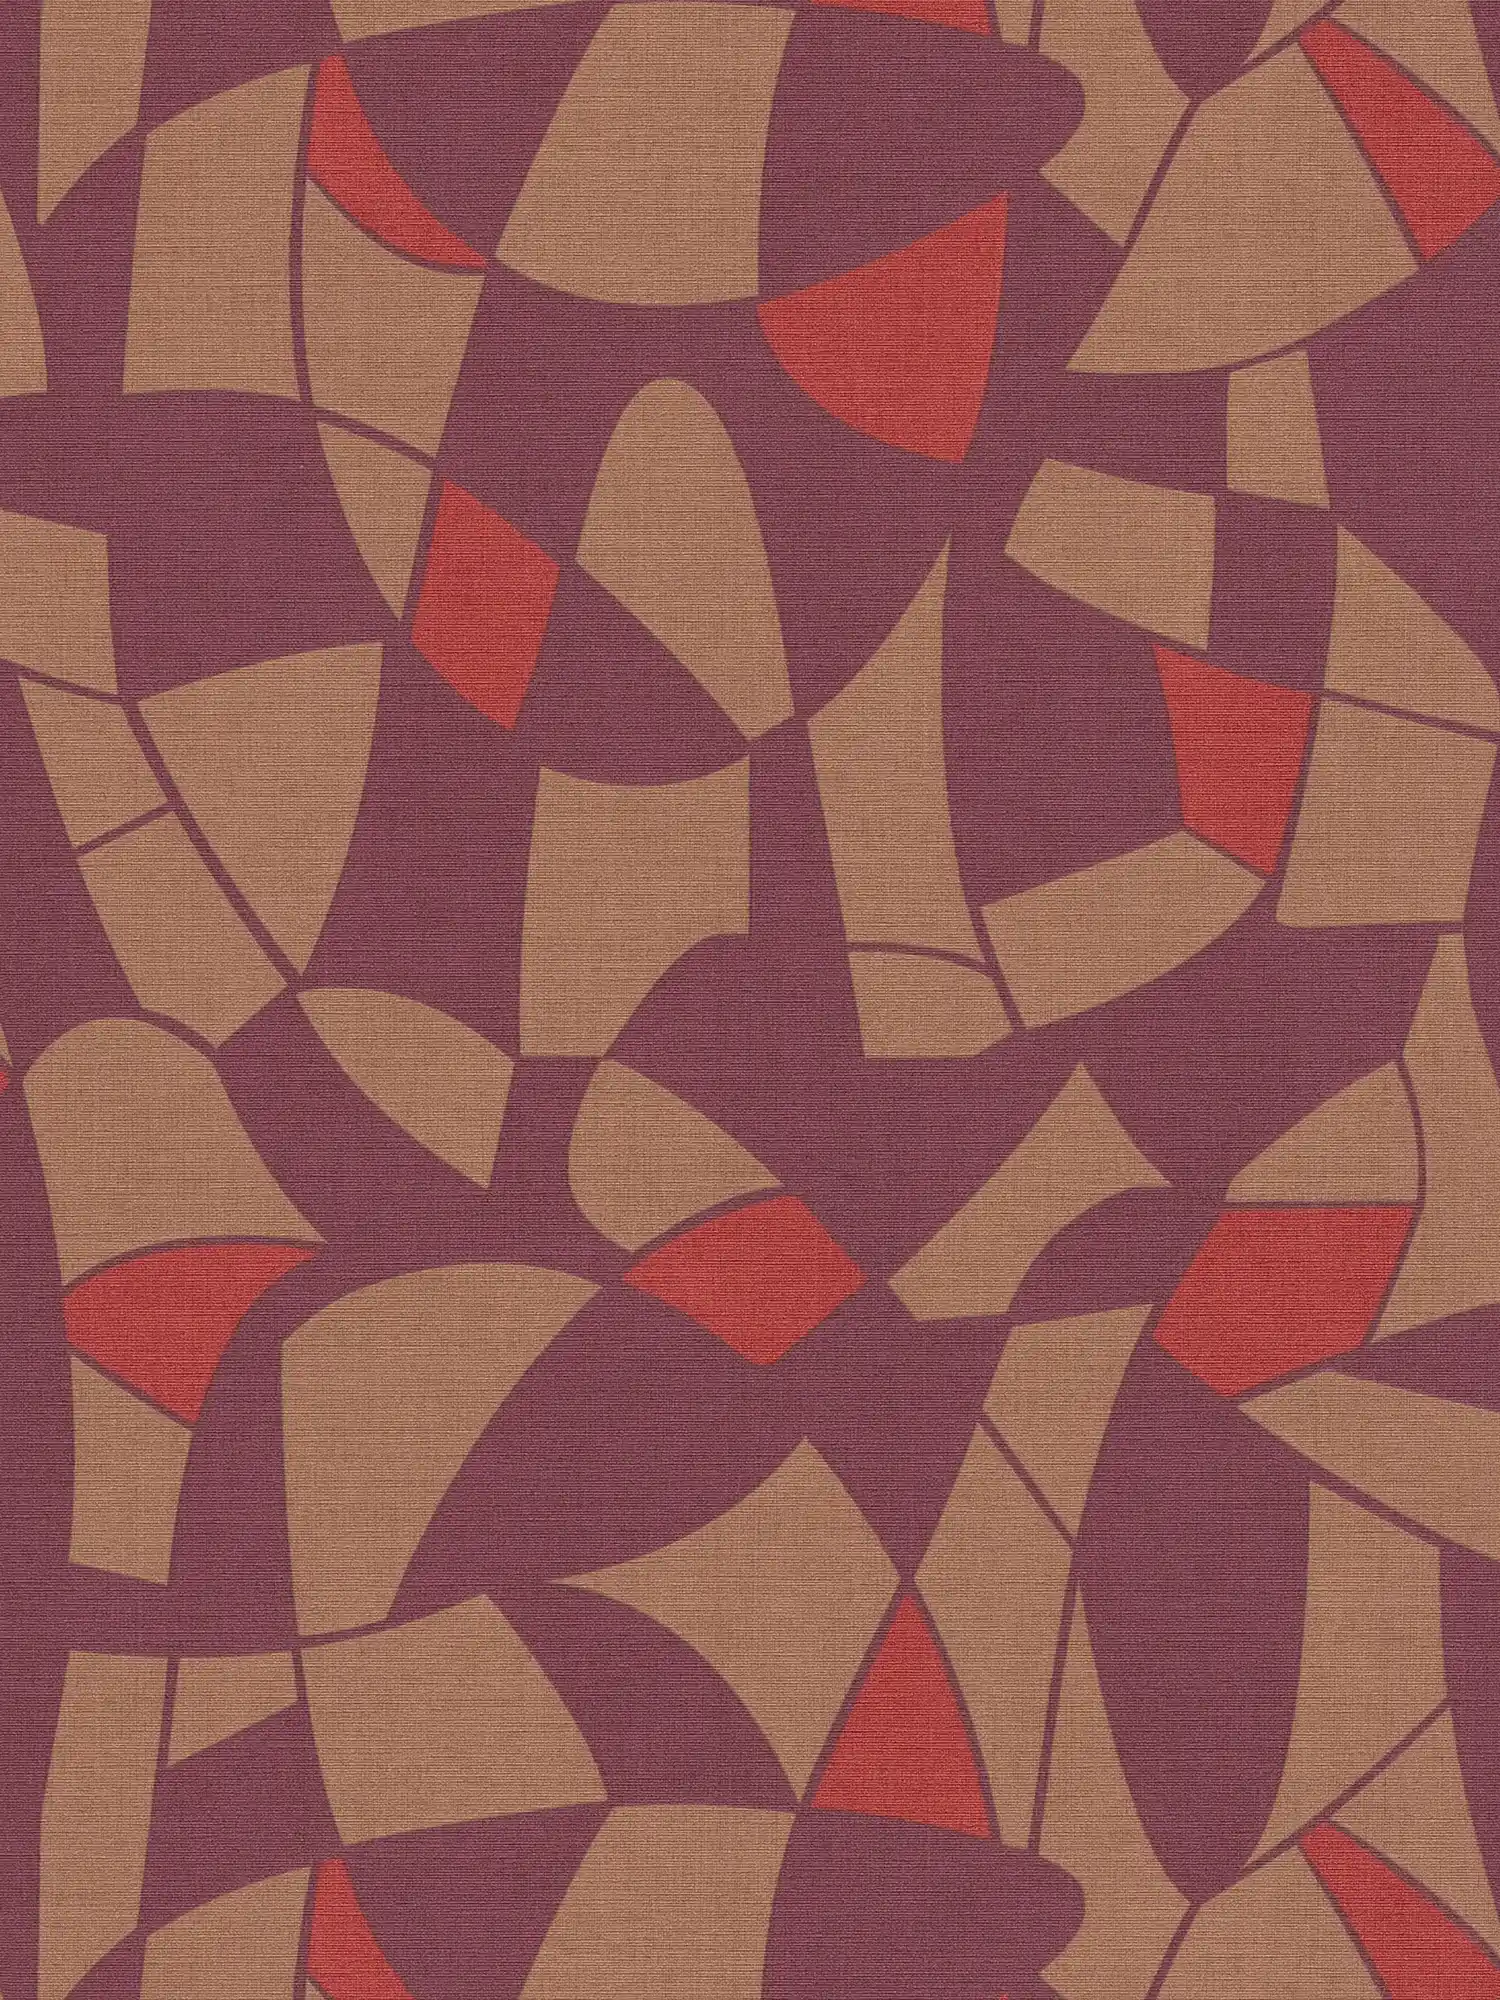 Papier peint intissé dans des couleurs sombres dans un motif abstrait - lilas, marron, rouge
